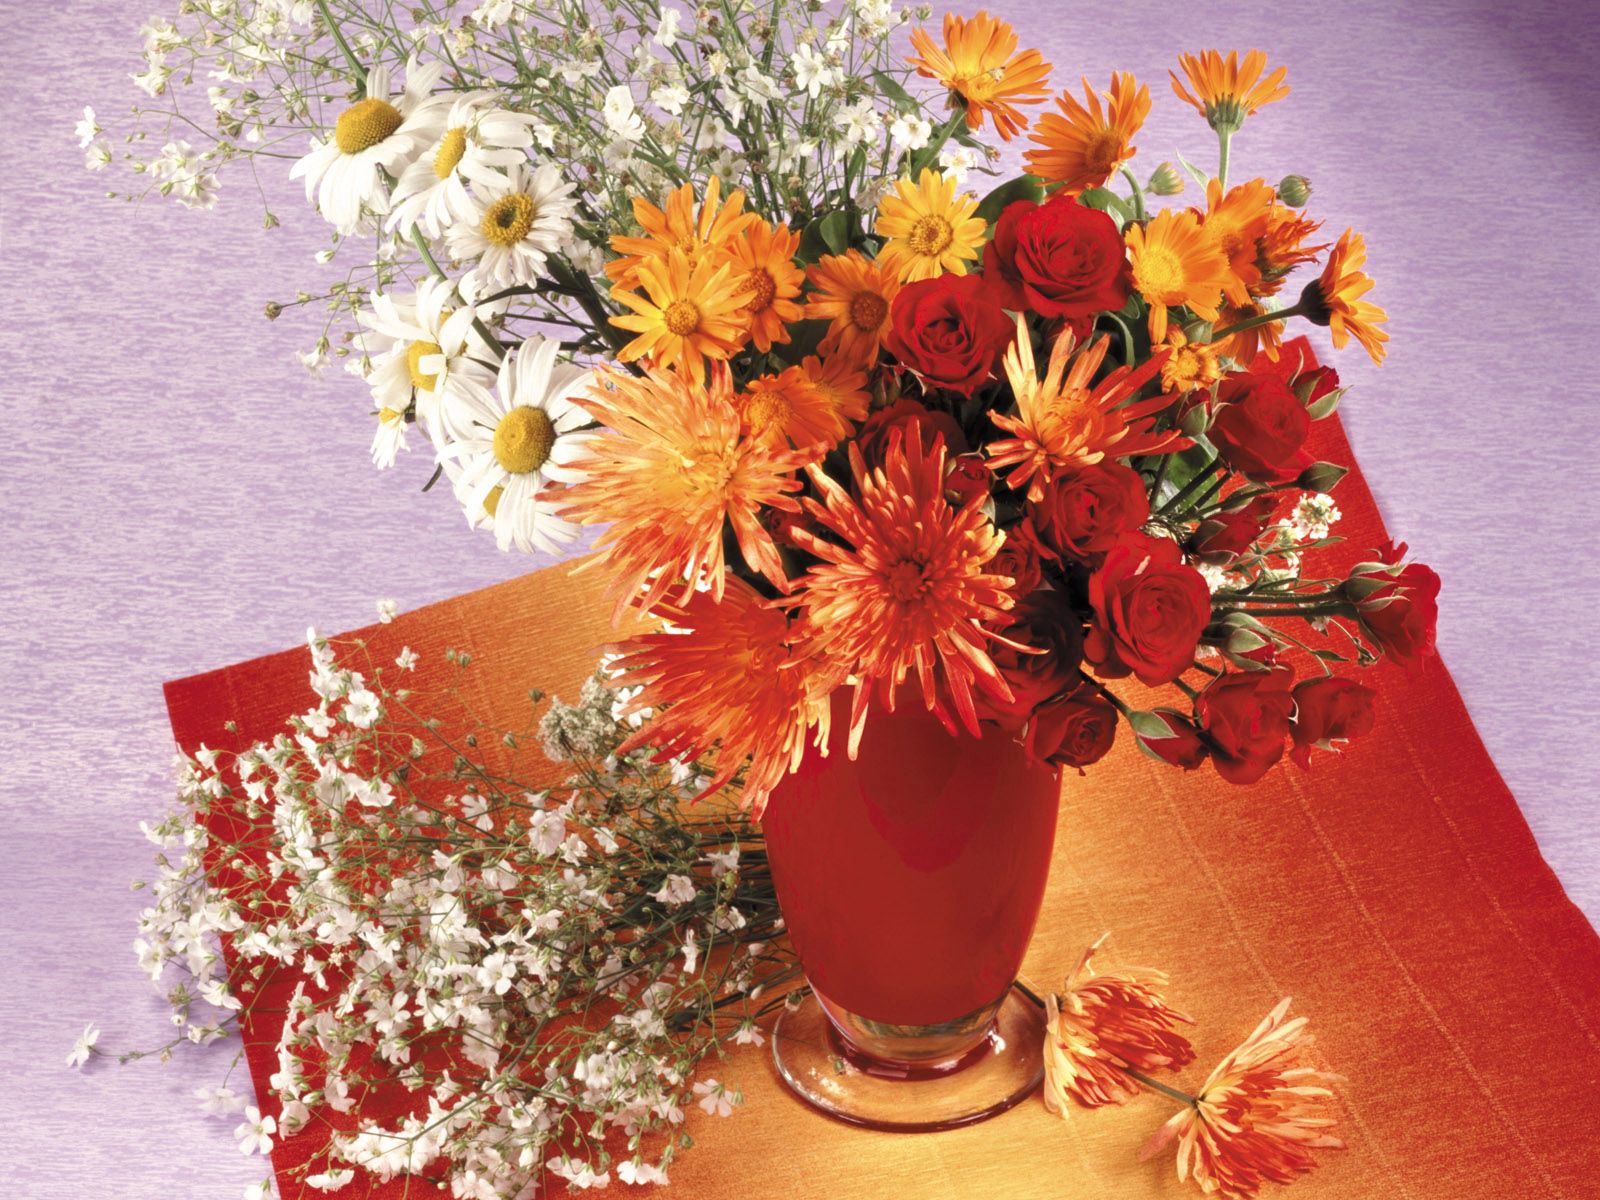 flowers, roses, chrysanthemum, vase, daisies